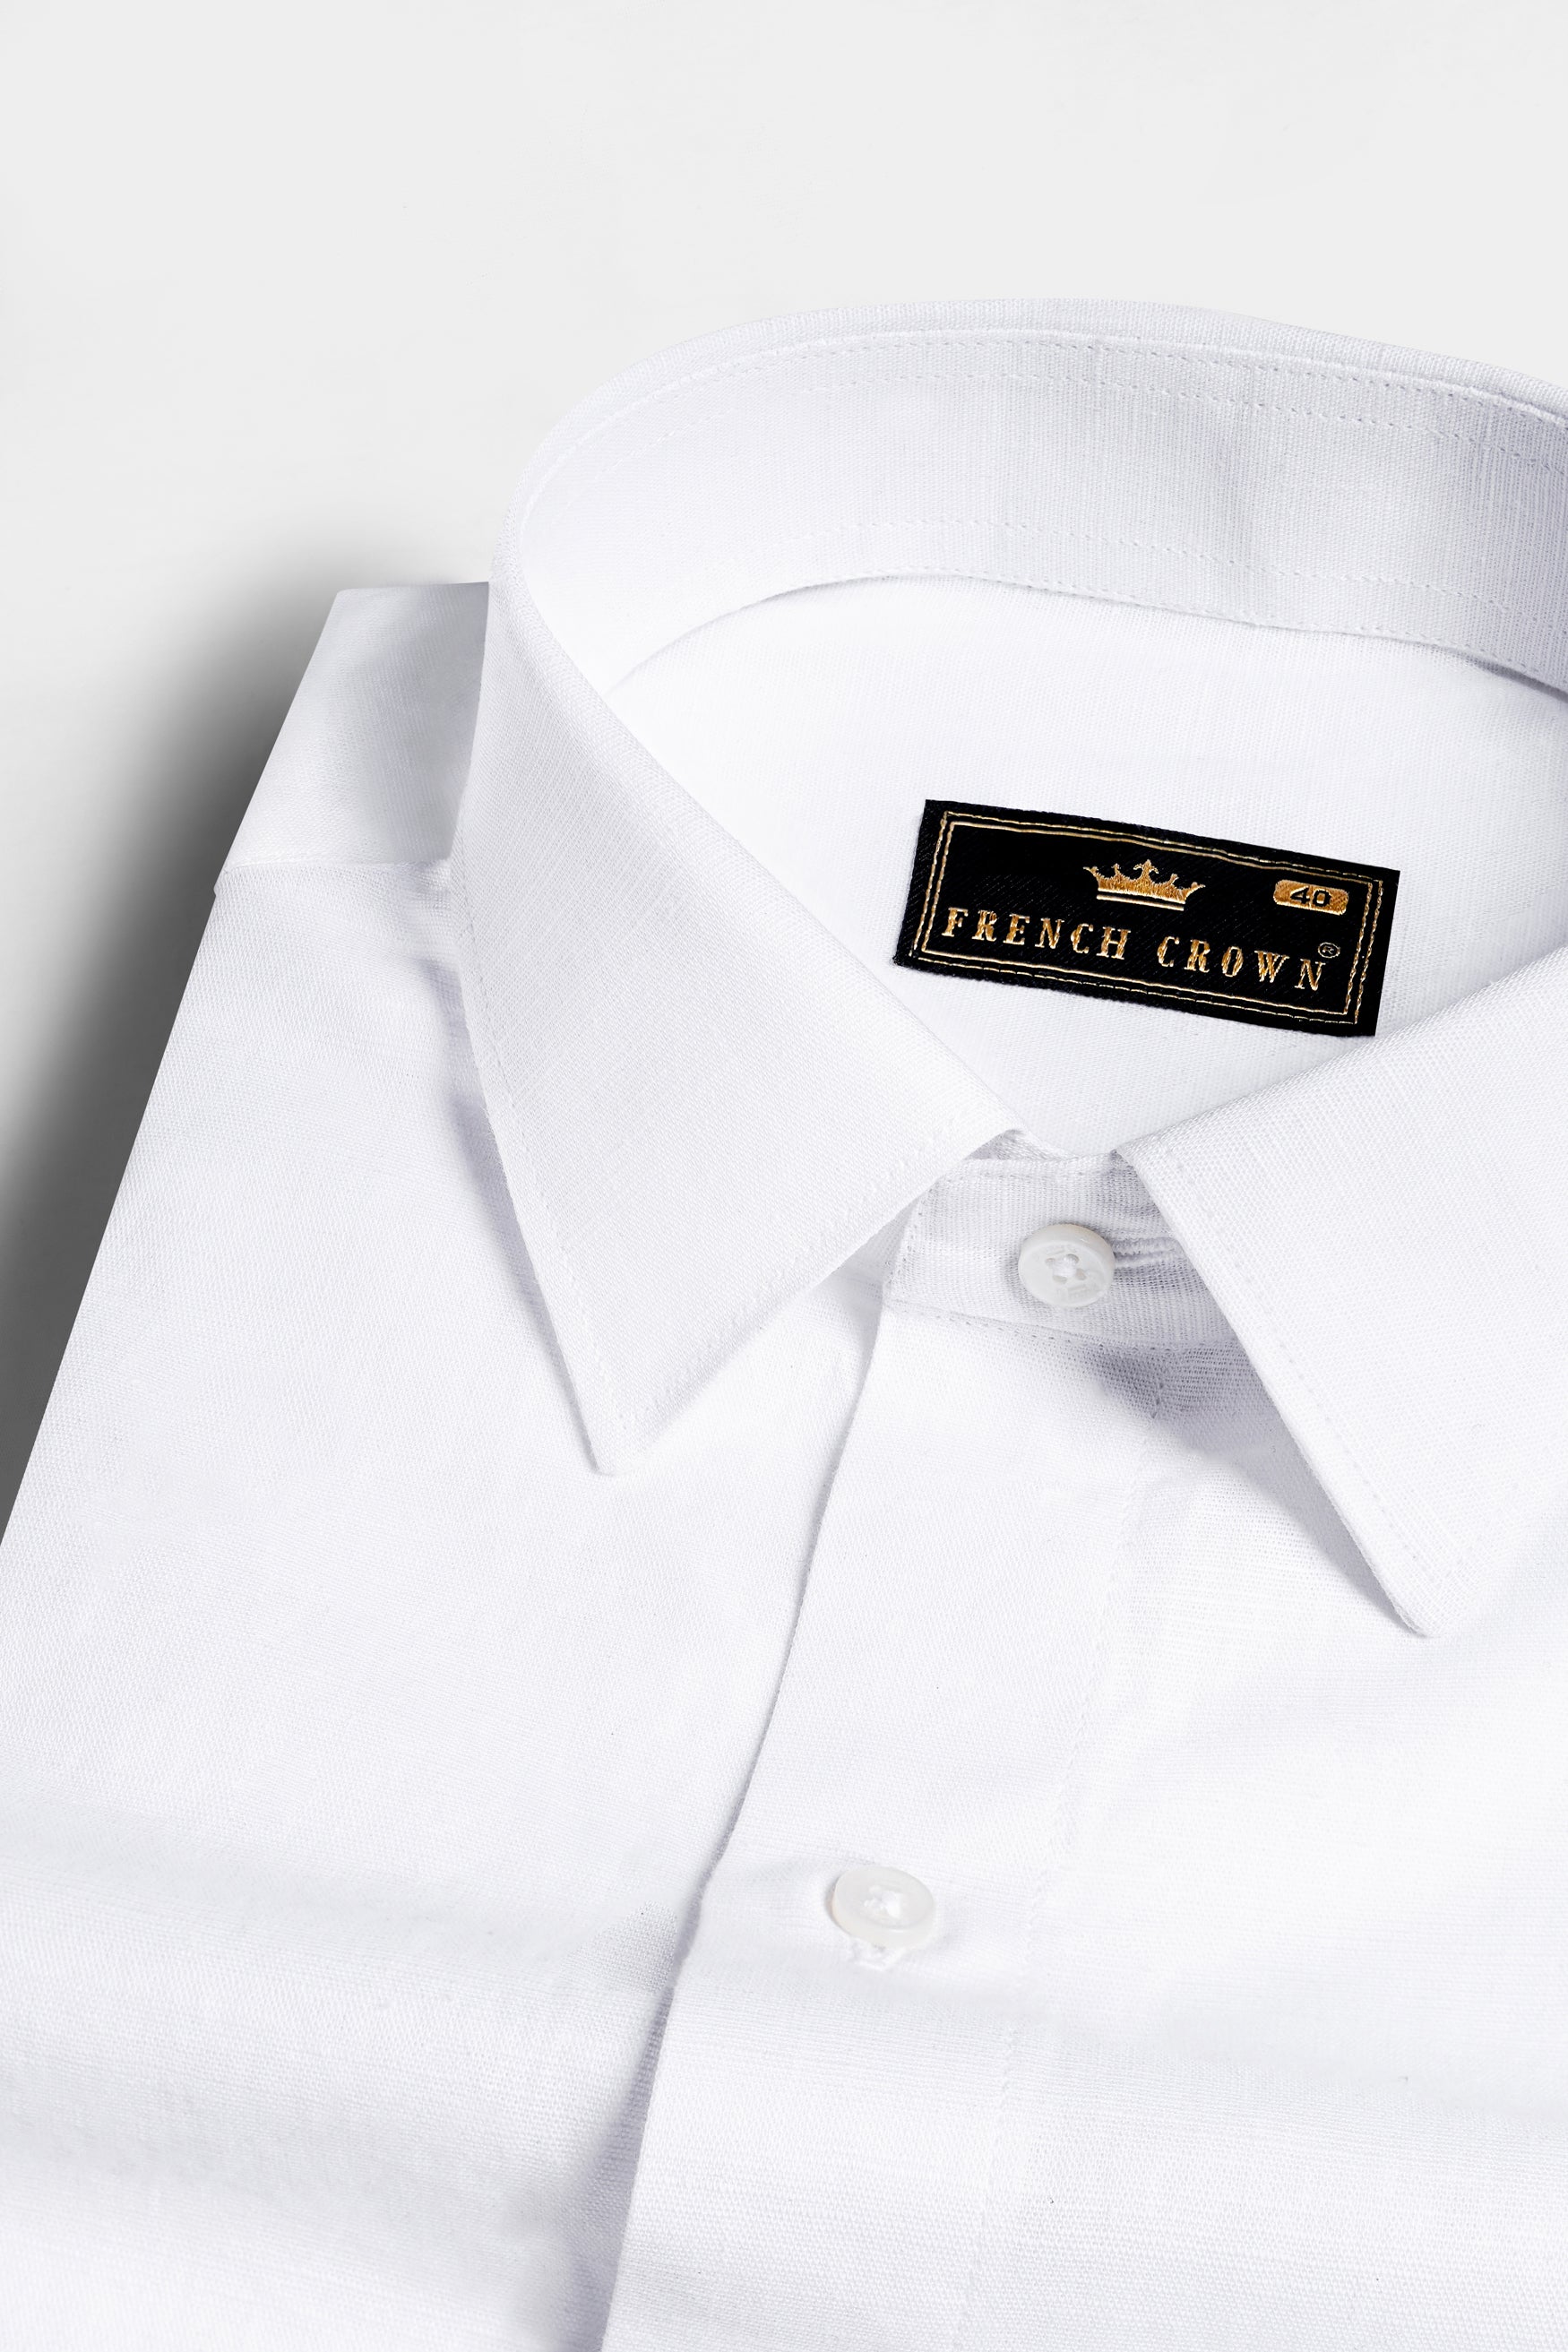 Check styling ideas for「Premium Linen Long-Sleeve Shirt、Linen